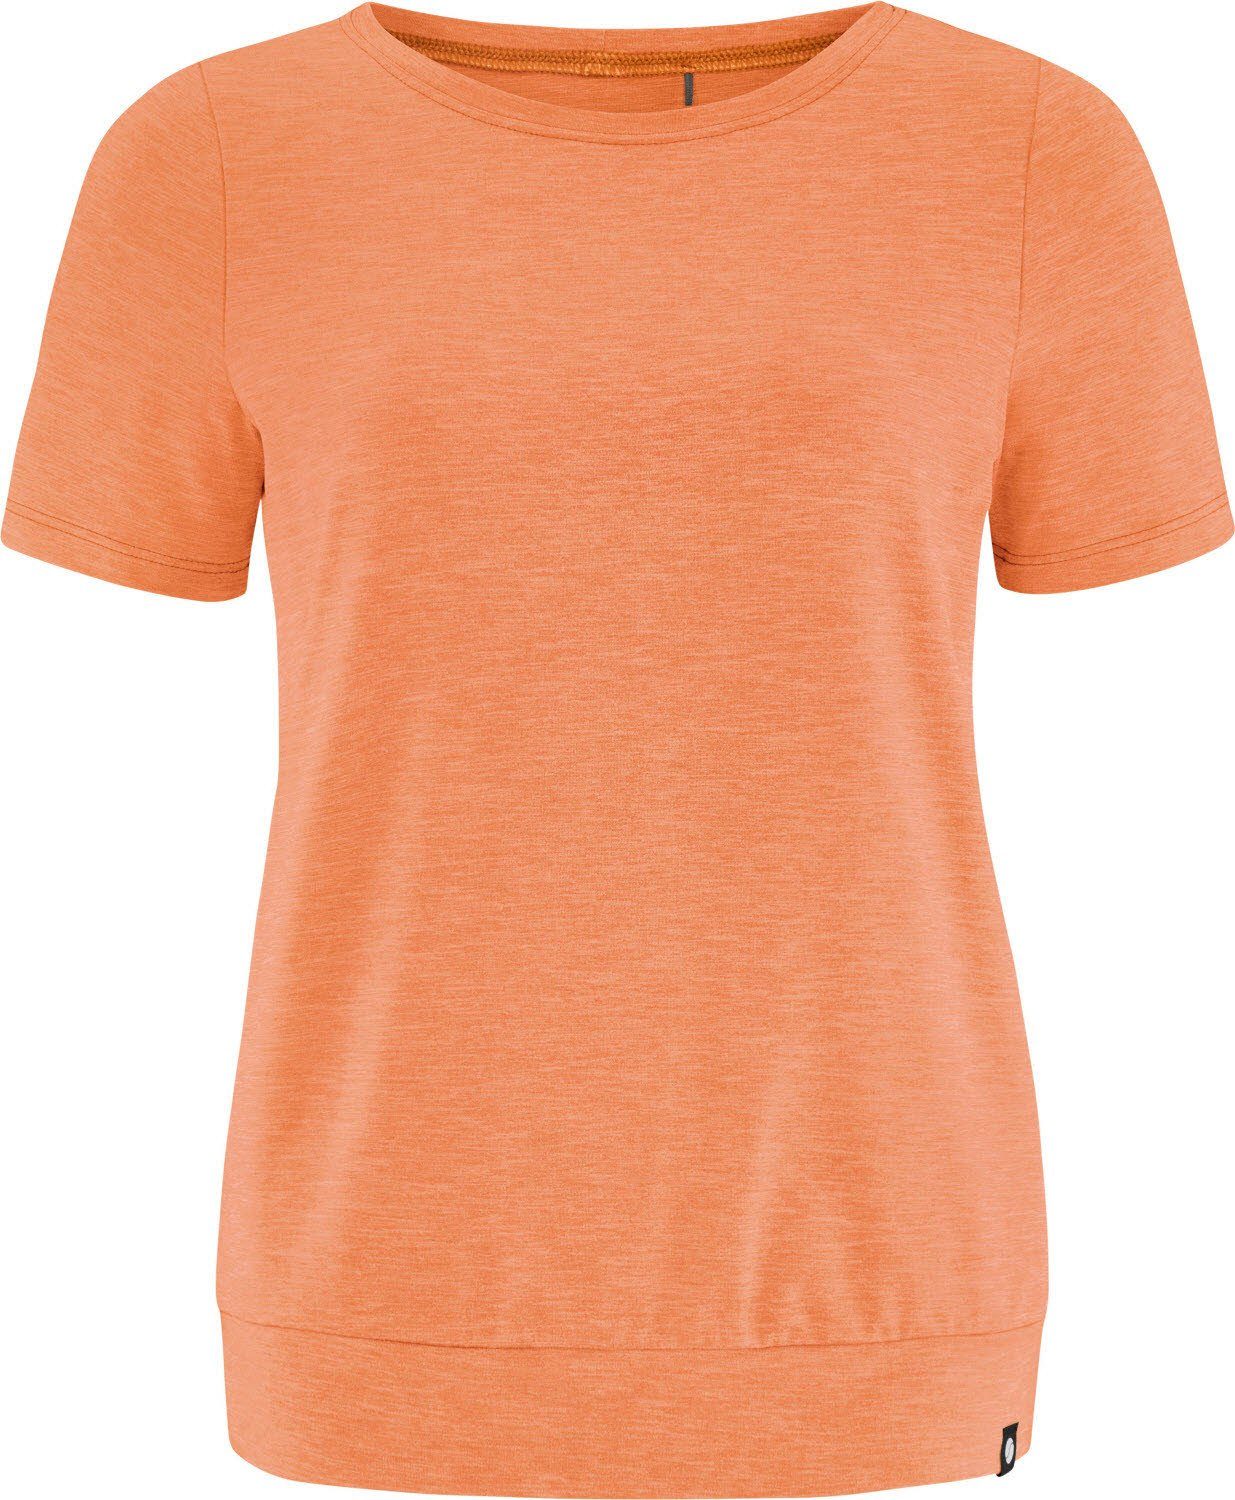 Sportswear Pennyw-Shirt Trainingsshirt SCHNEIDER SUNDIAL-MELIERT